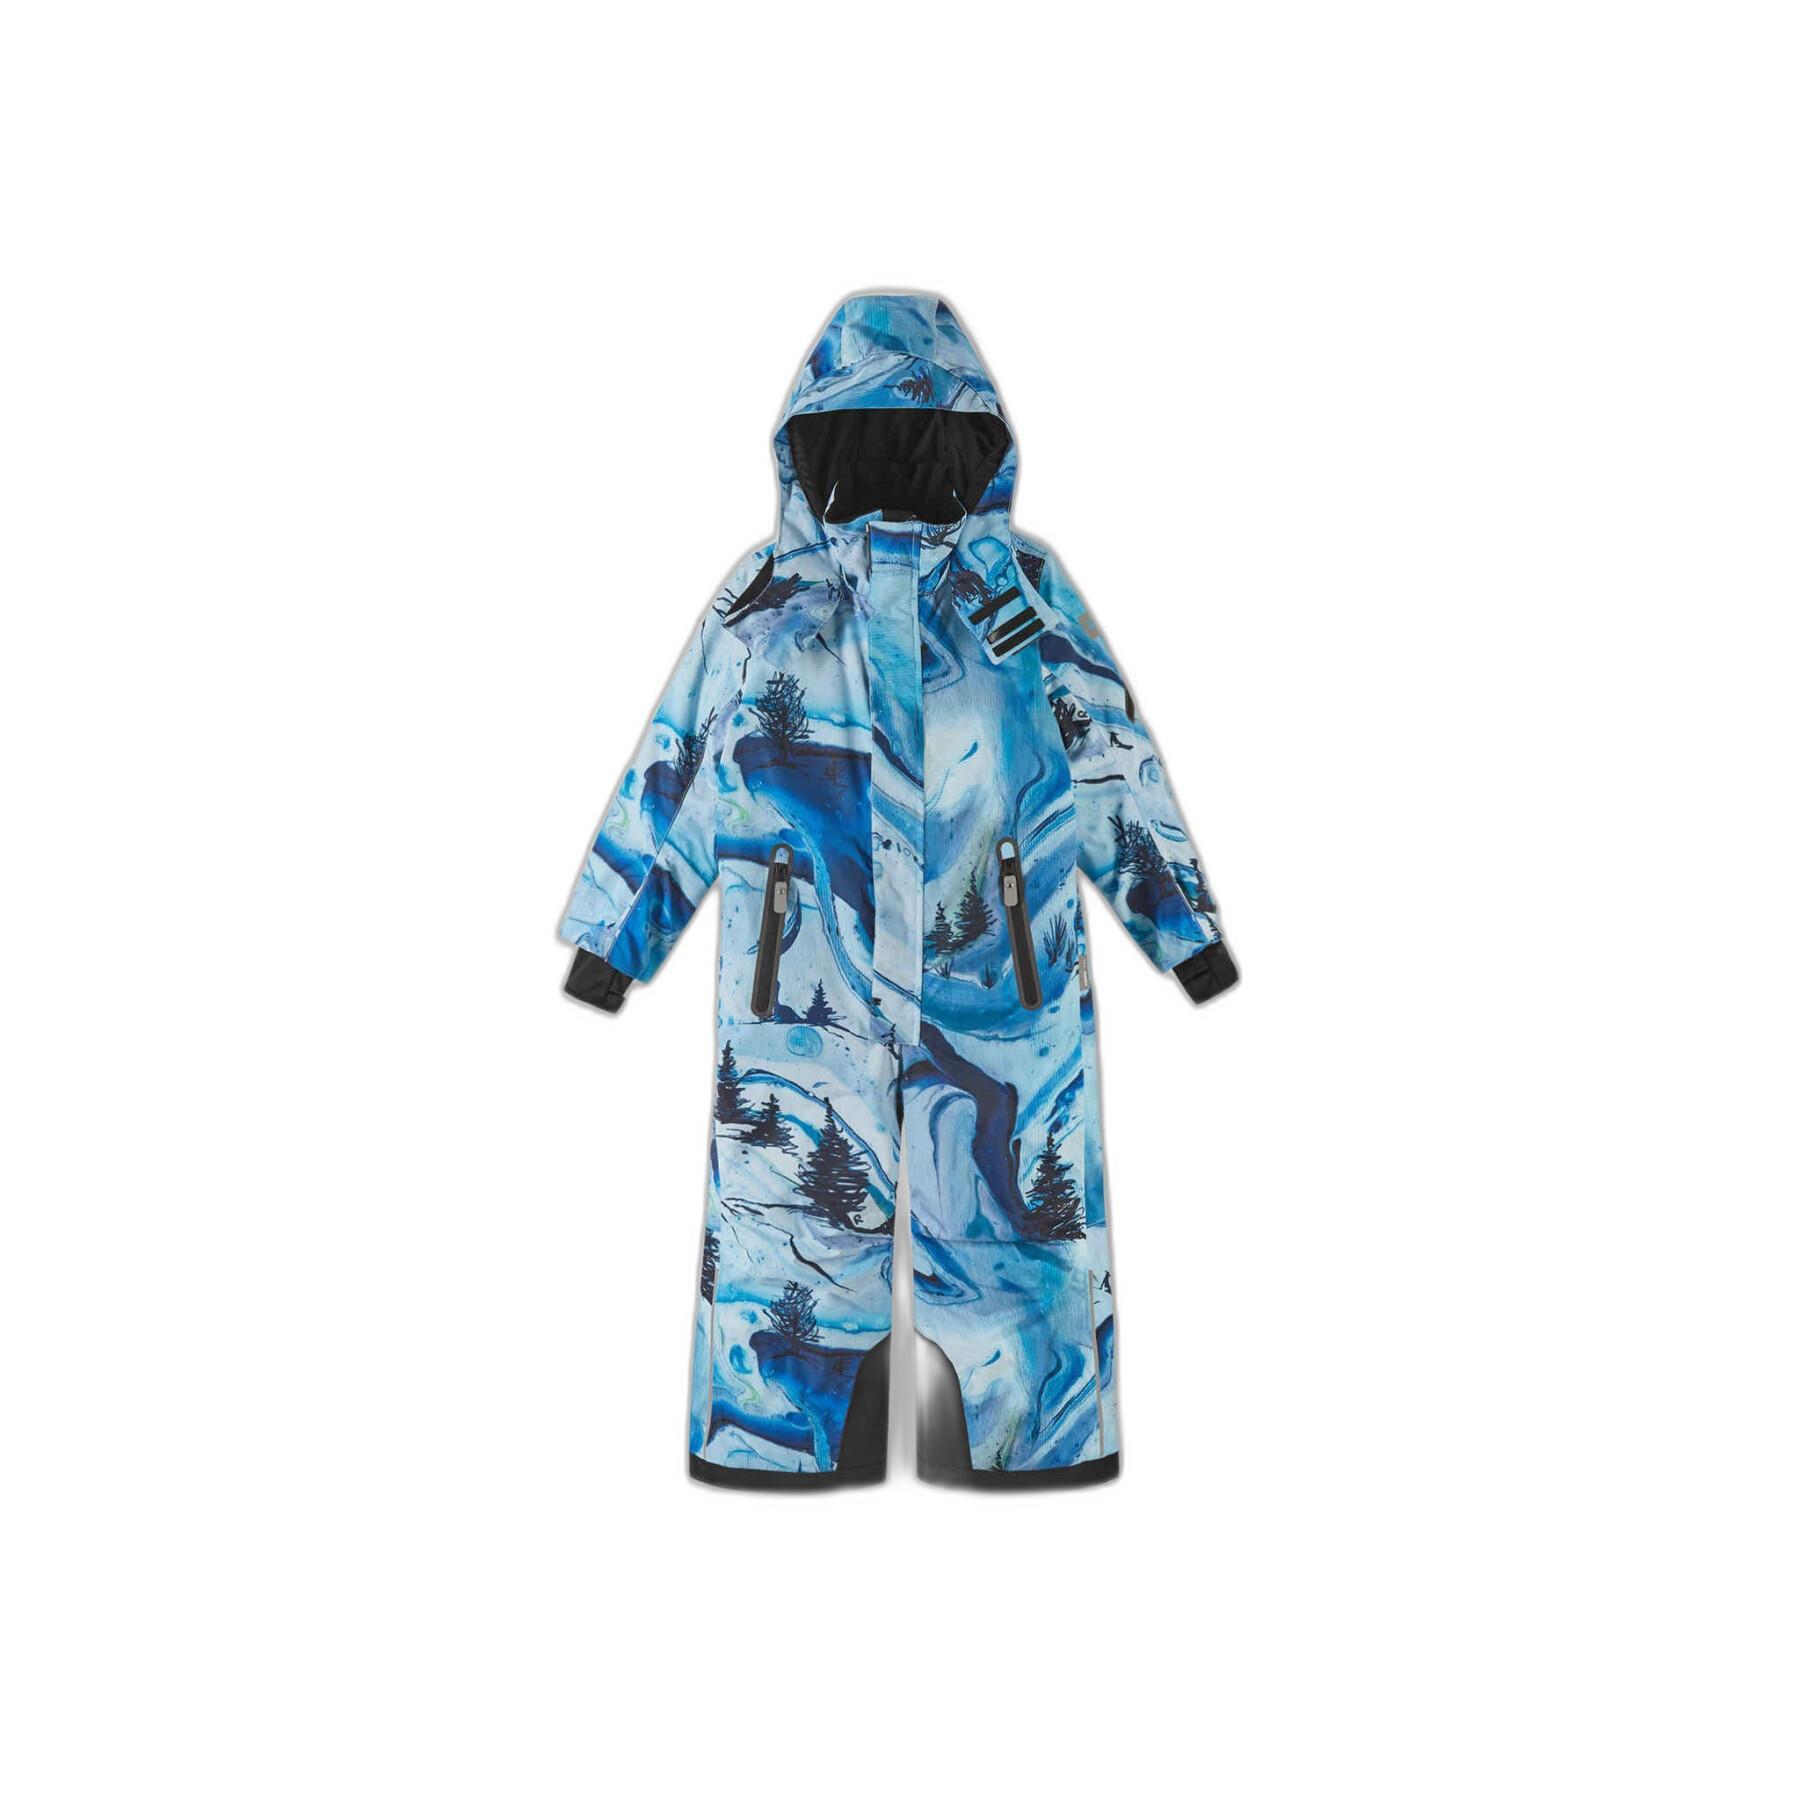 Ski suit for children Reima Reach